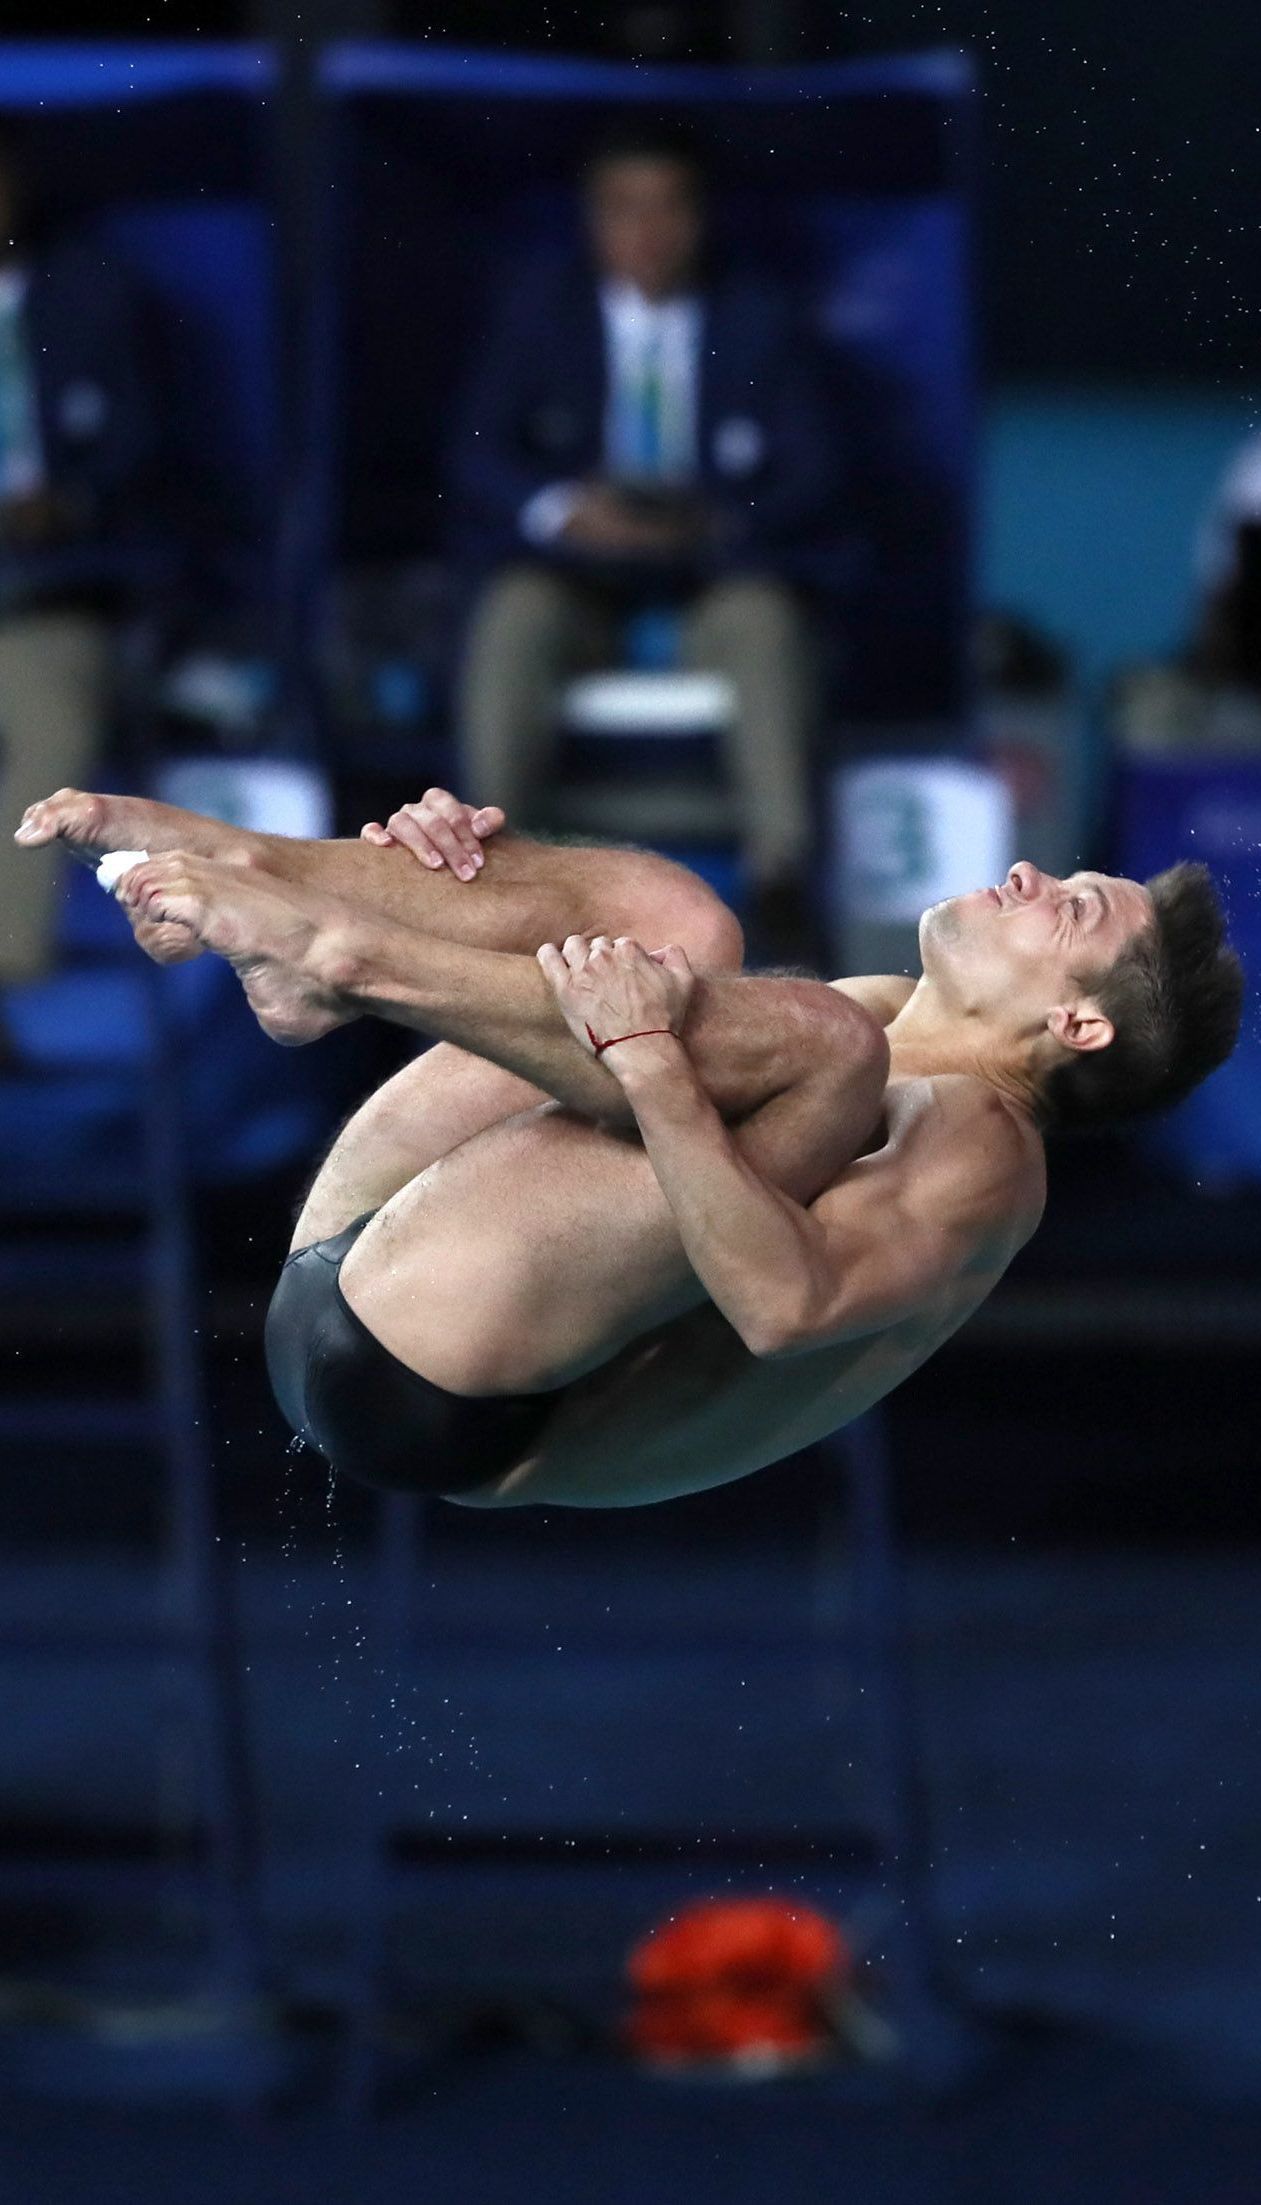 Плюс еще две медали. Украинцы выиграли "серебро" и "бронзу" на чемпионате Европы по прыжкам в воду